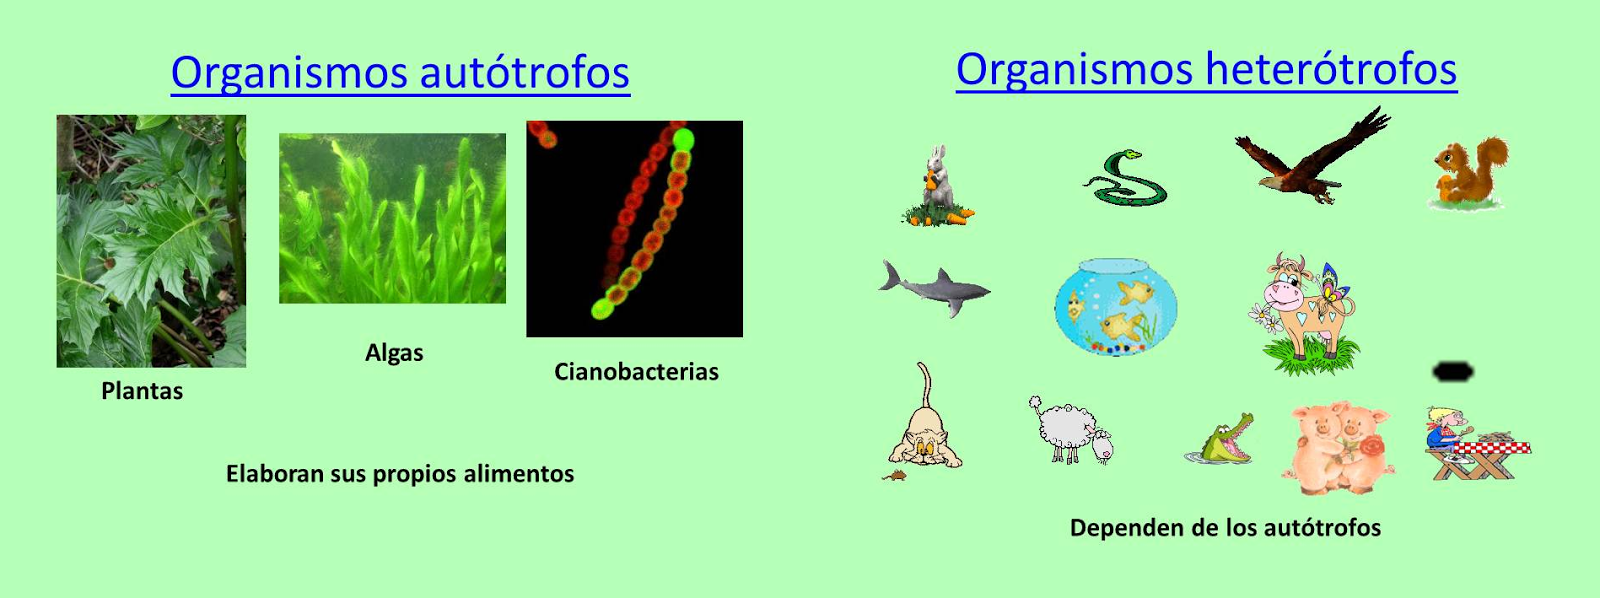 ℒ𝓪 𝓒𝓲𝒆𝓷𝓬𝓲𝓪 𝓭𝒆 𝓐𝓹𝓻𝒆𝓷𝓭𝒆𝓻: Organismos autótrofos,  heterótrofos y su relación